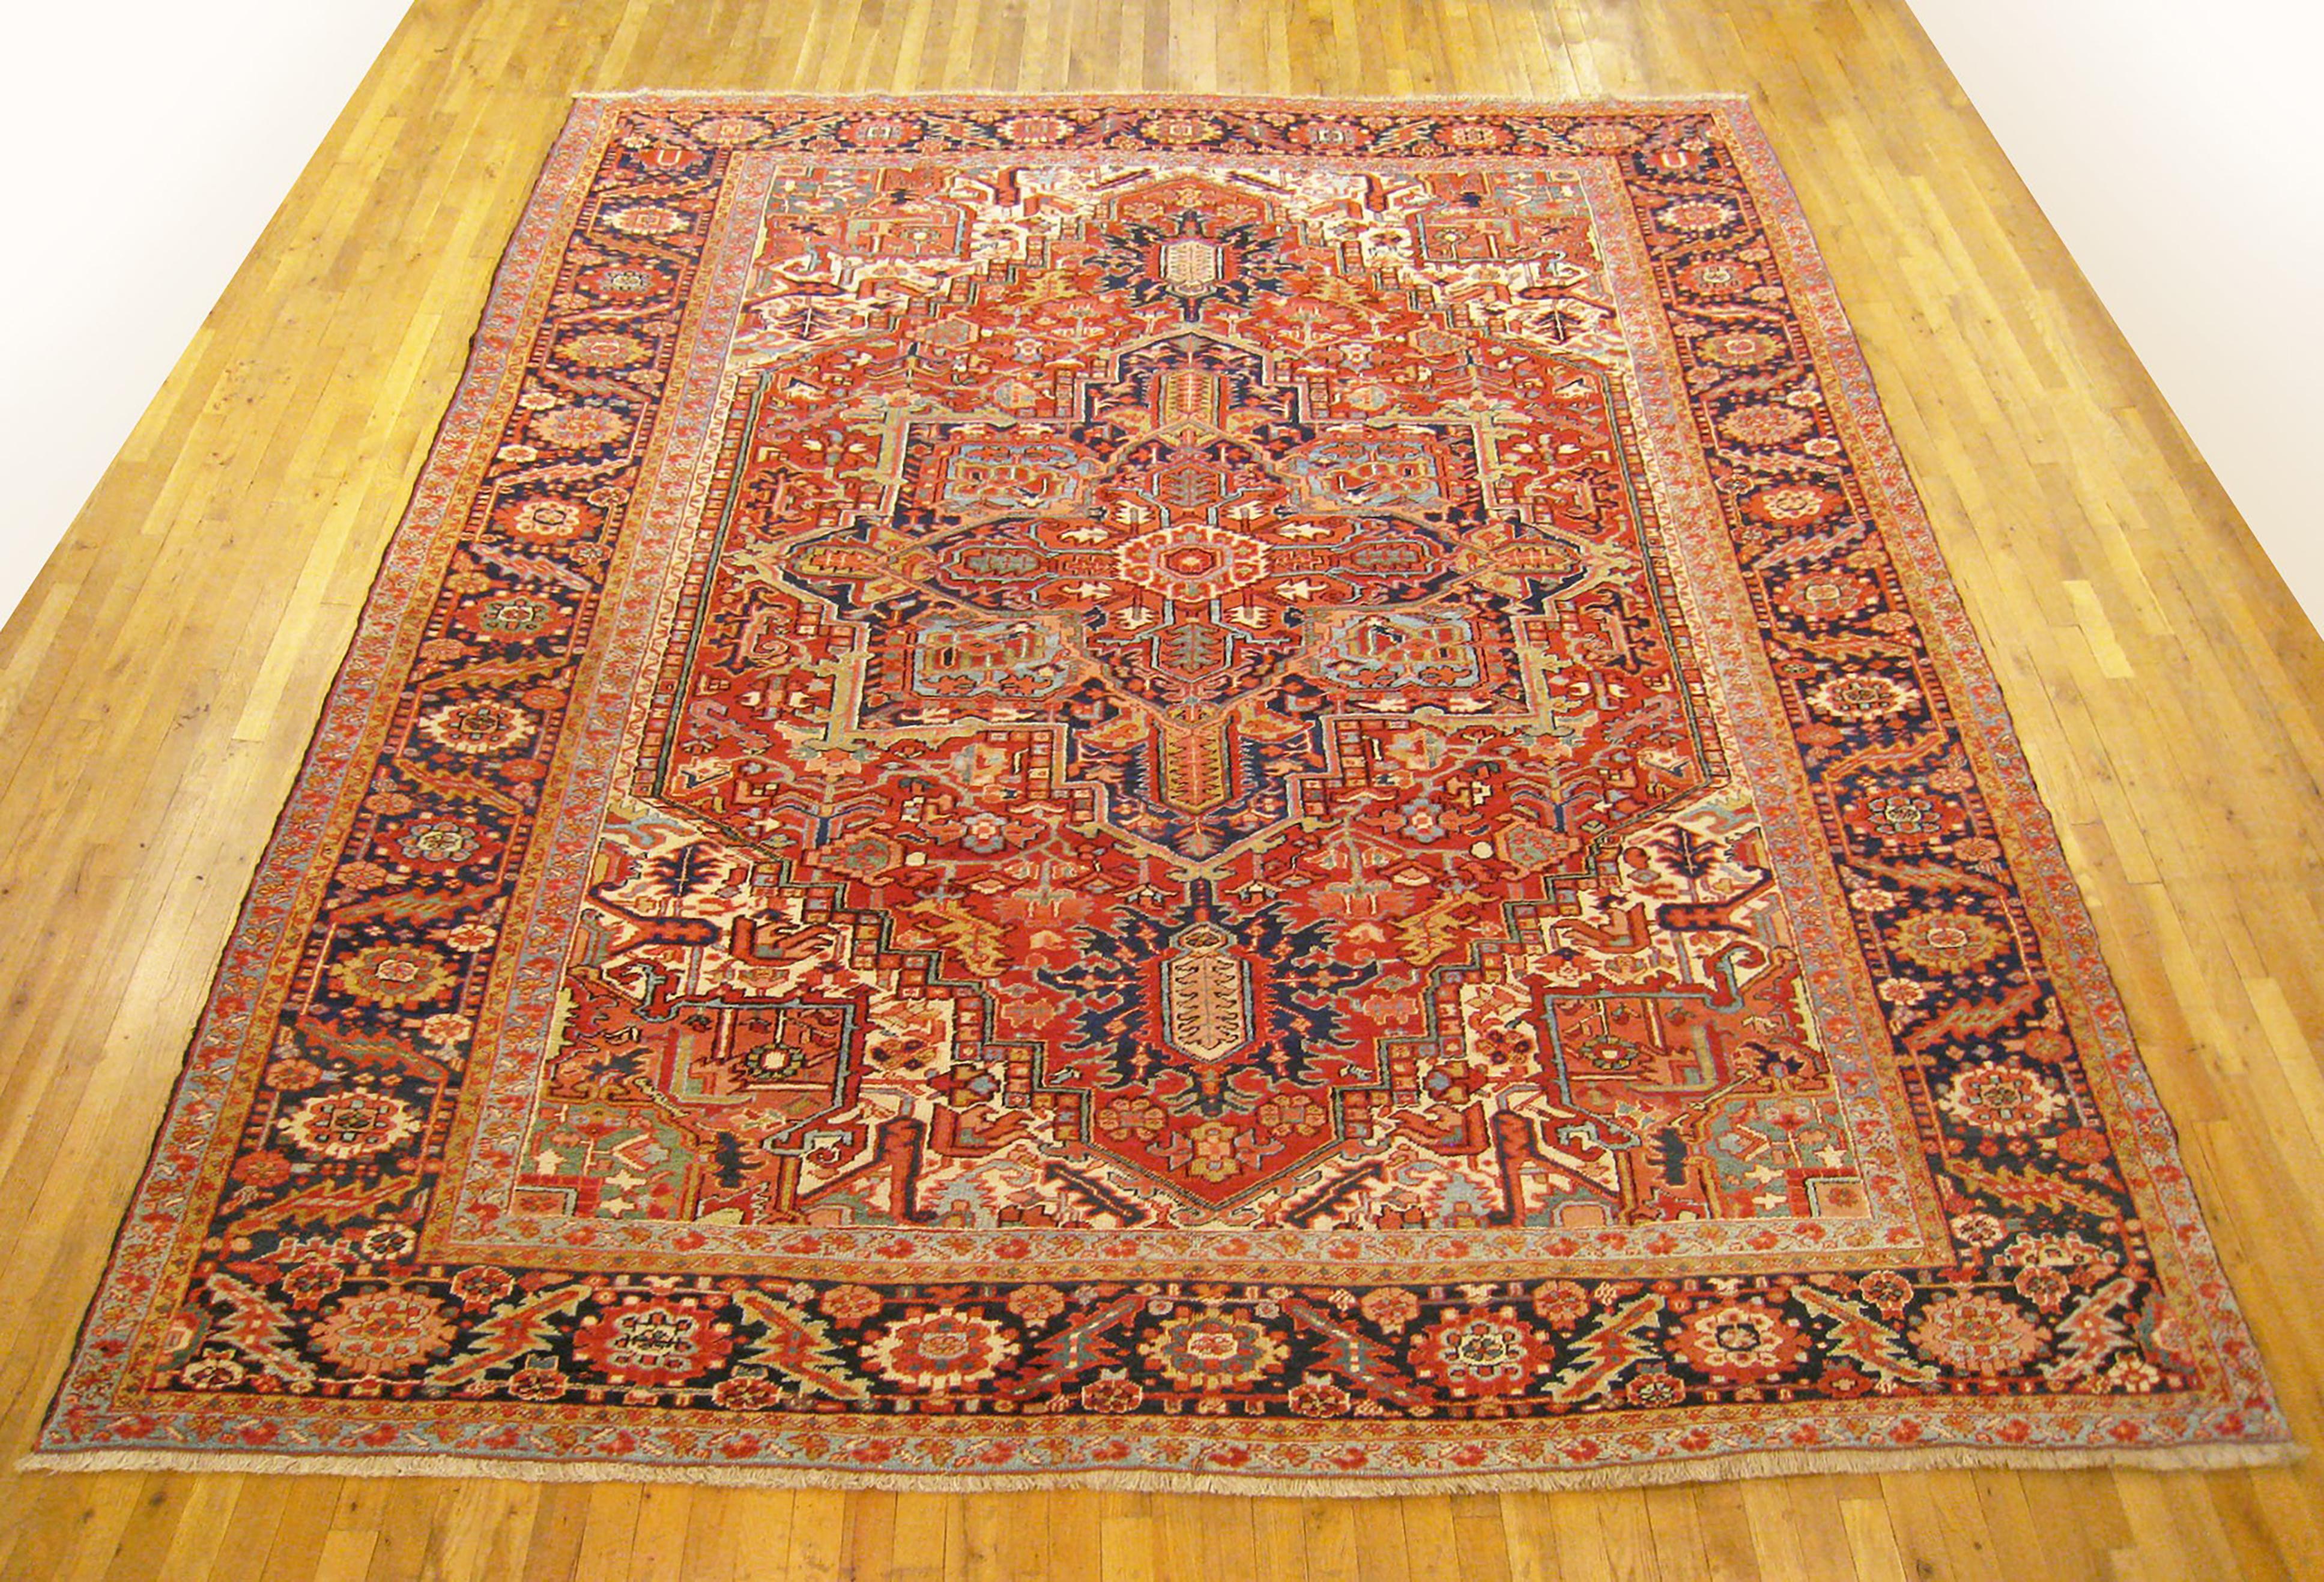 Antique Persian Heriz Oriental rug, Room size

An antique Persian Heriz oriental rug, size 12'5